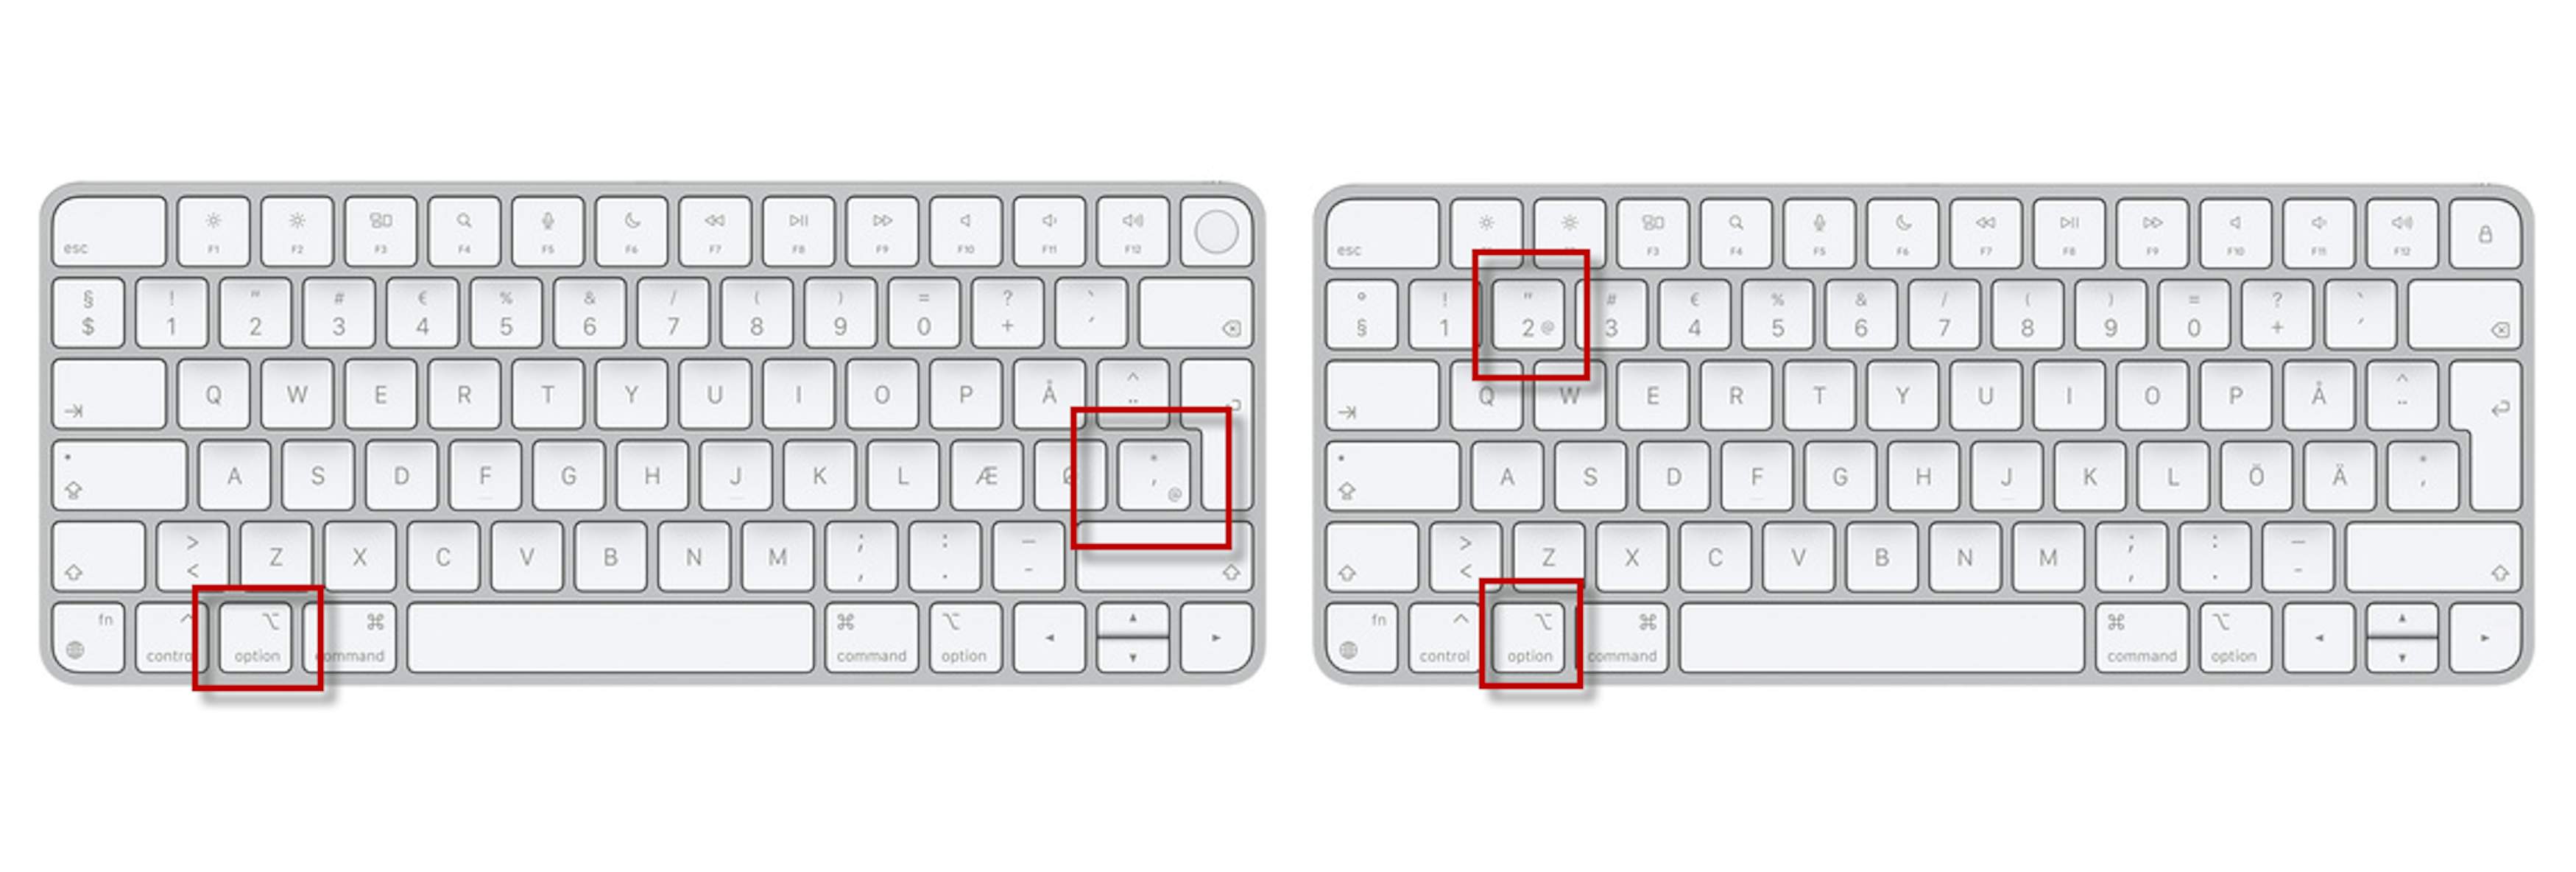 Snabel-a - et af de tegn på dit tastatur | Komputer.dk